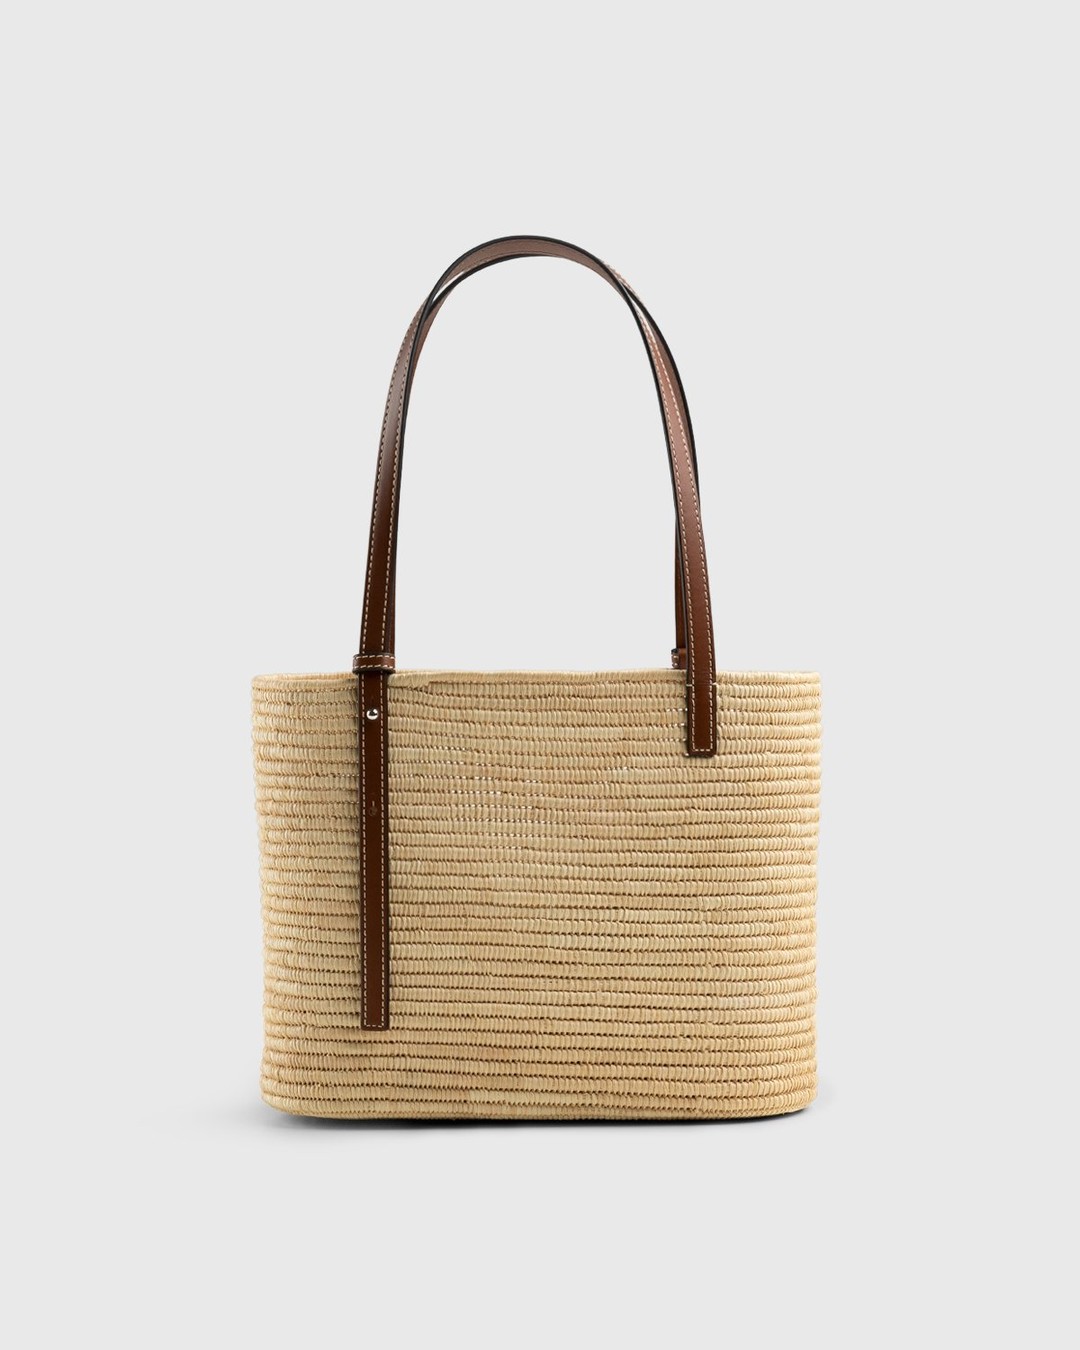 Loewe – Paula's Ibiza Small Square Basket Bag Natural/Pecan - Bags - Beige - Image 2